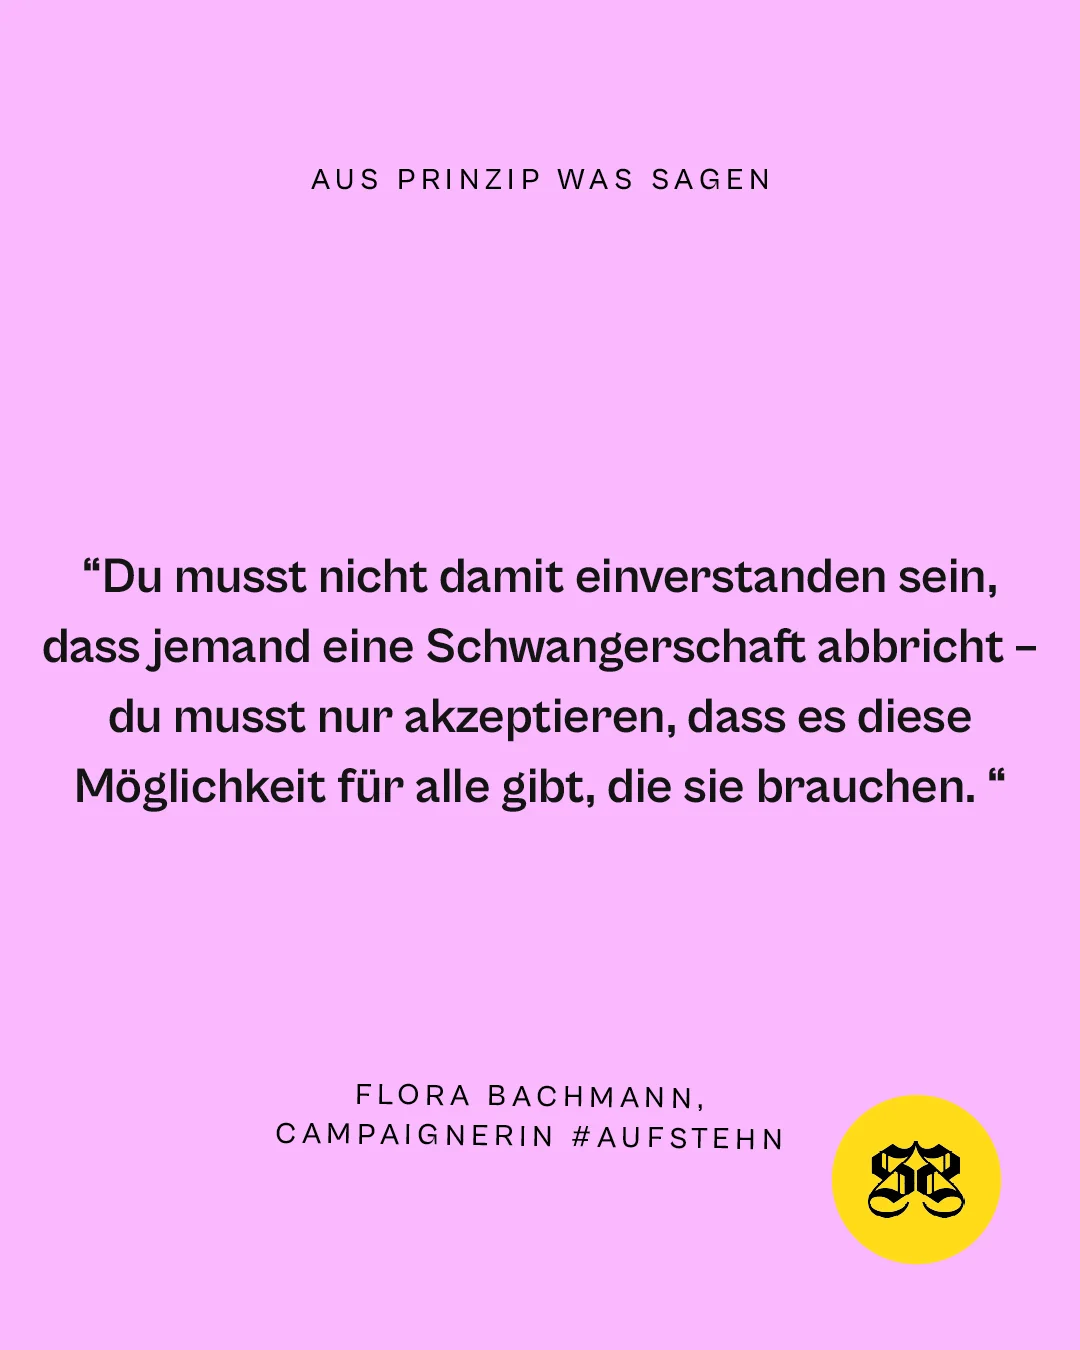 AP_Statements_Flora_Bachmann2